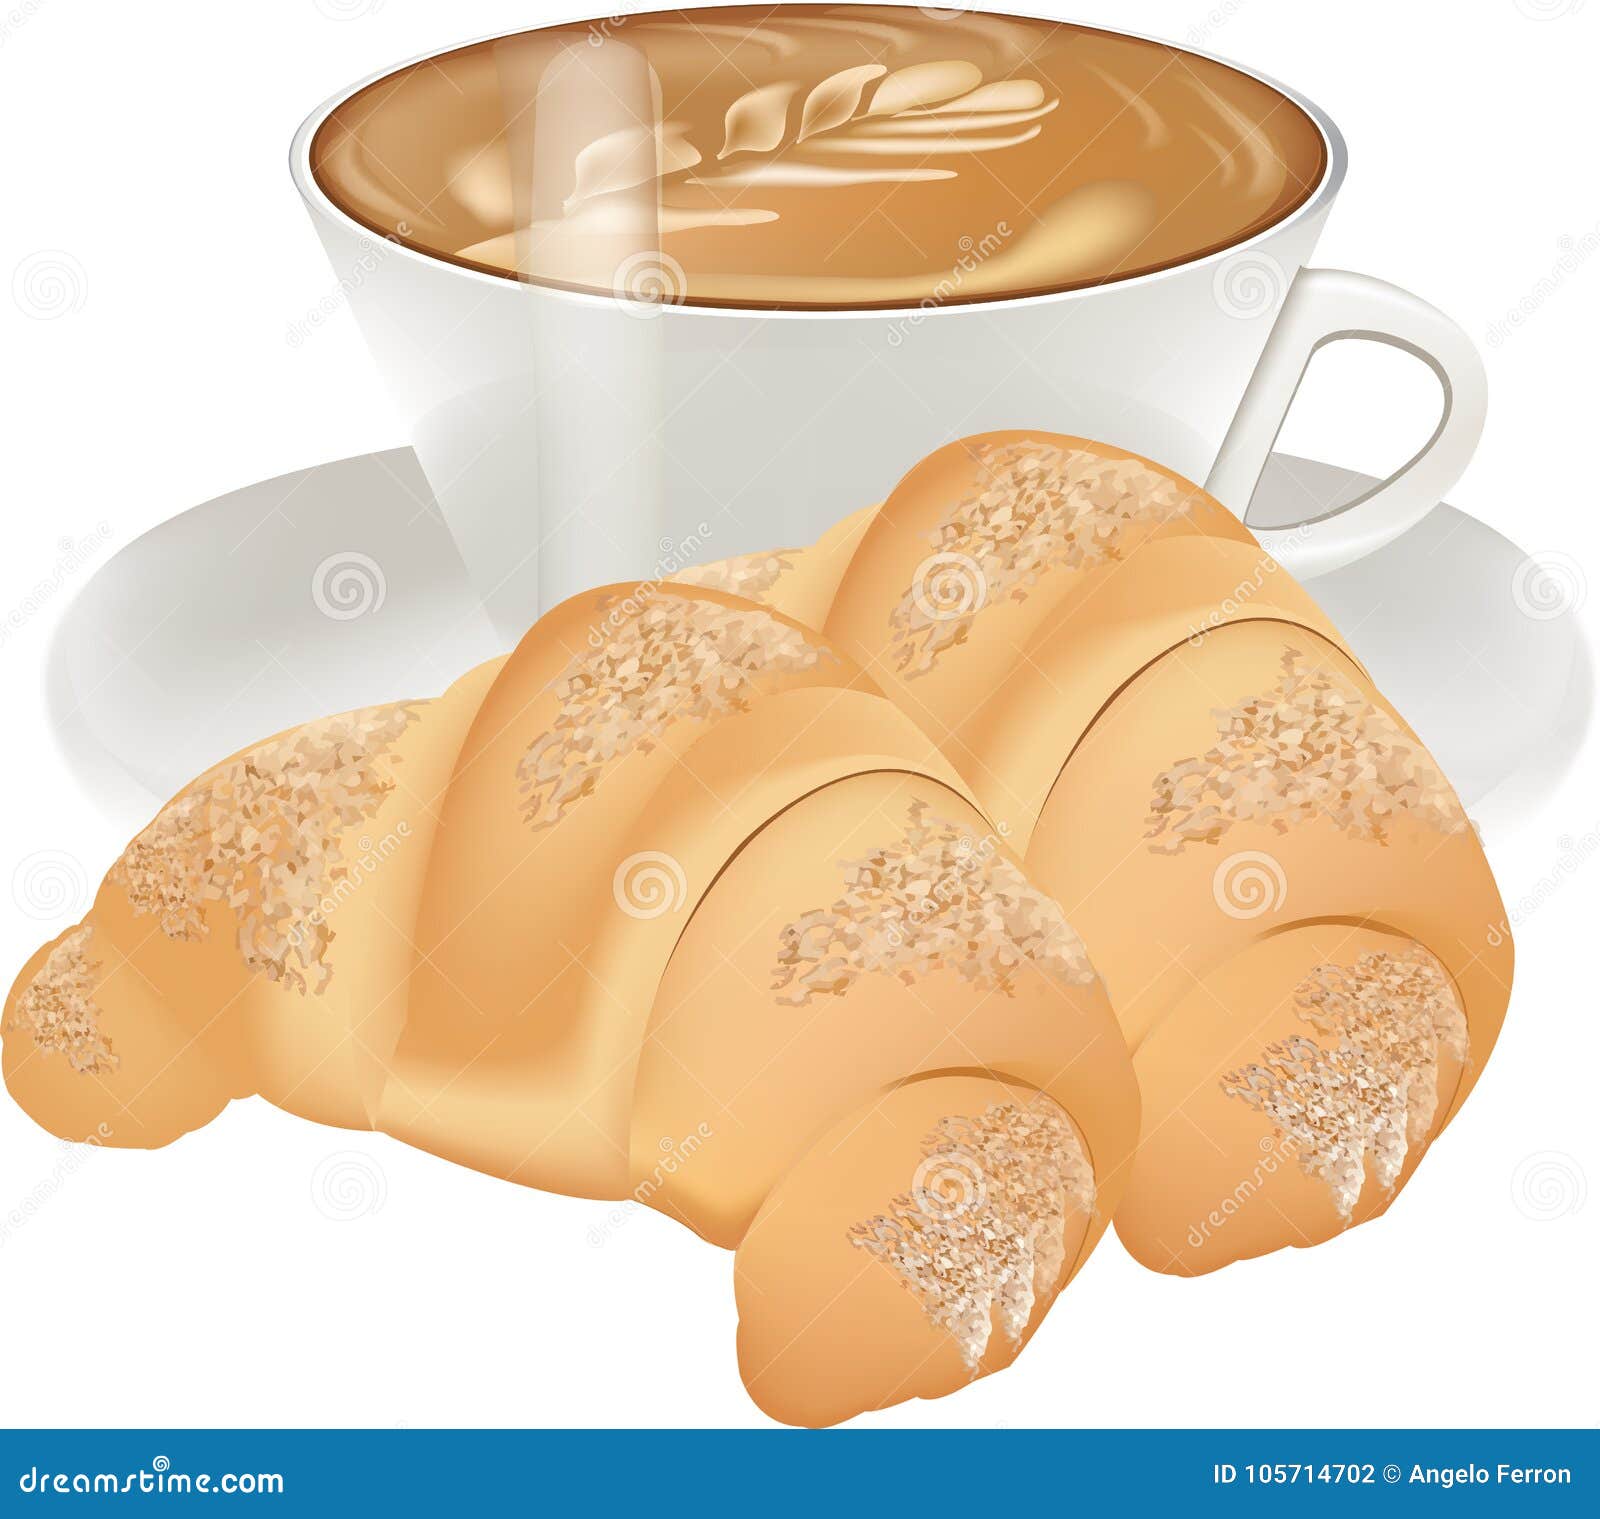 clipart caf�� croissant - photo #6